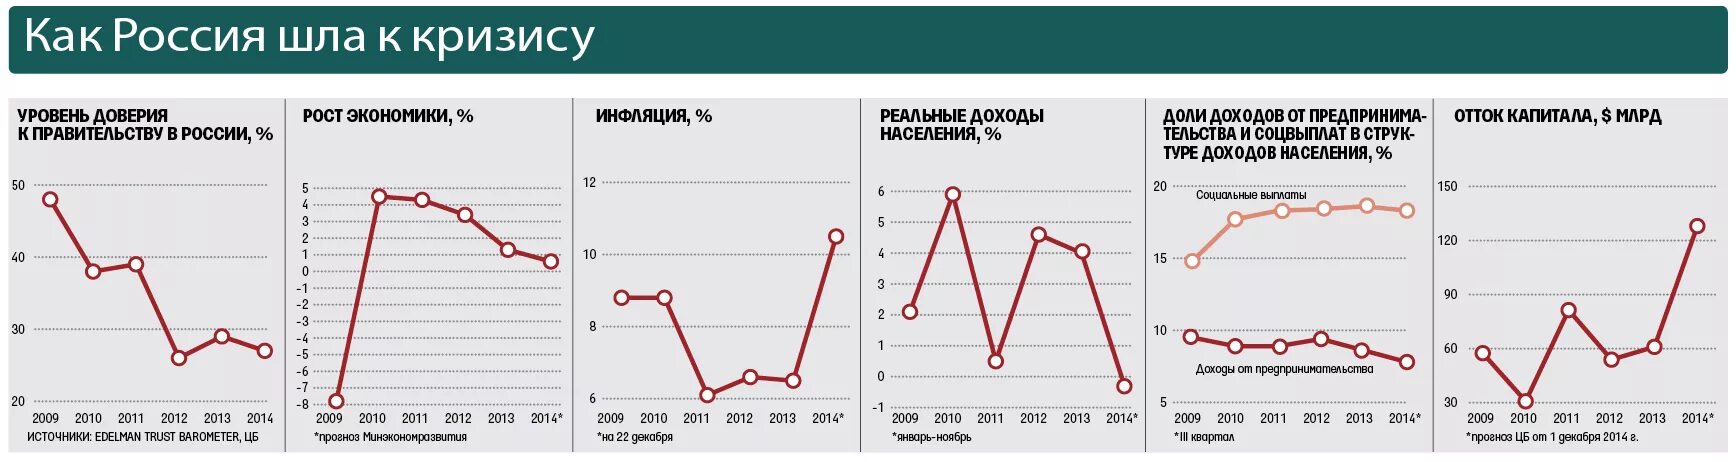 Таблица экономические кризисы в России по годам. Экономические кризисы в России график. Экономические кризисы в России по годам. Кризис в России диаграмма. Кризисные годы в экономике